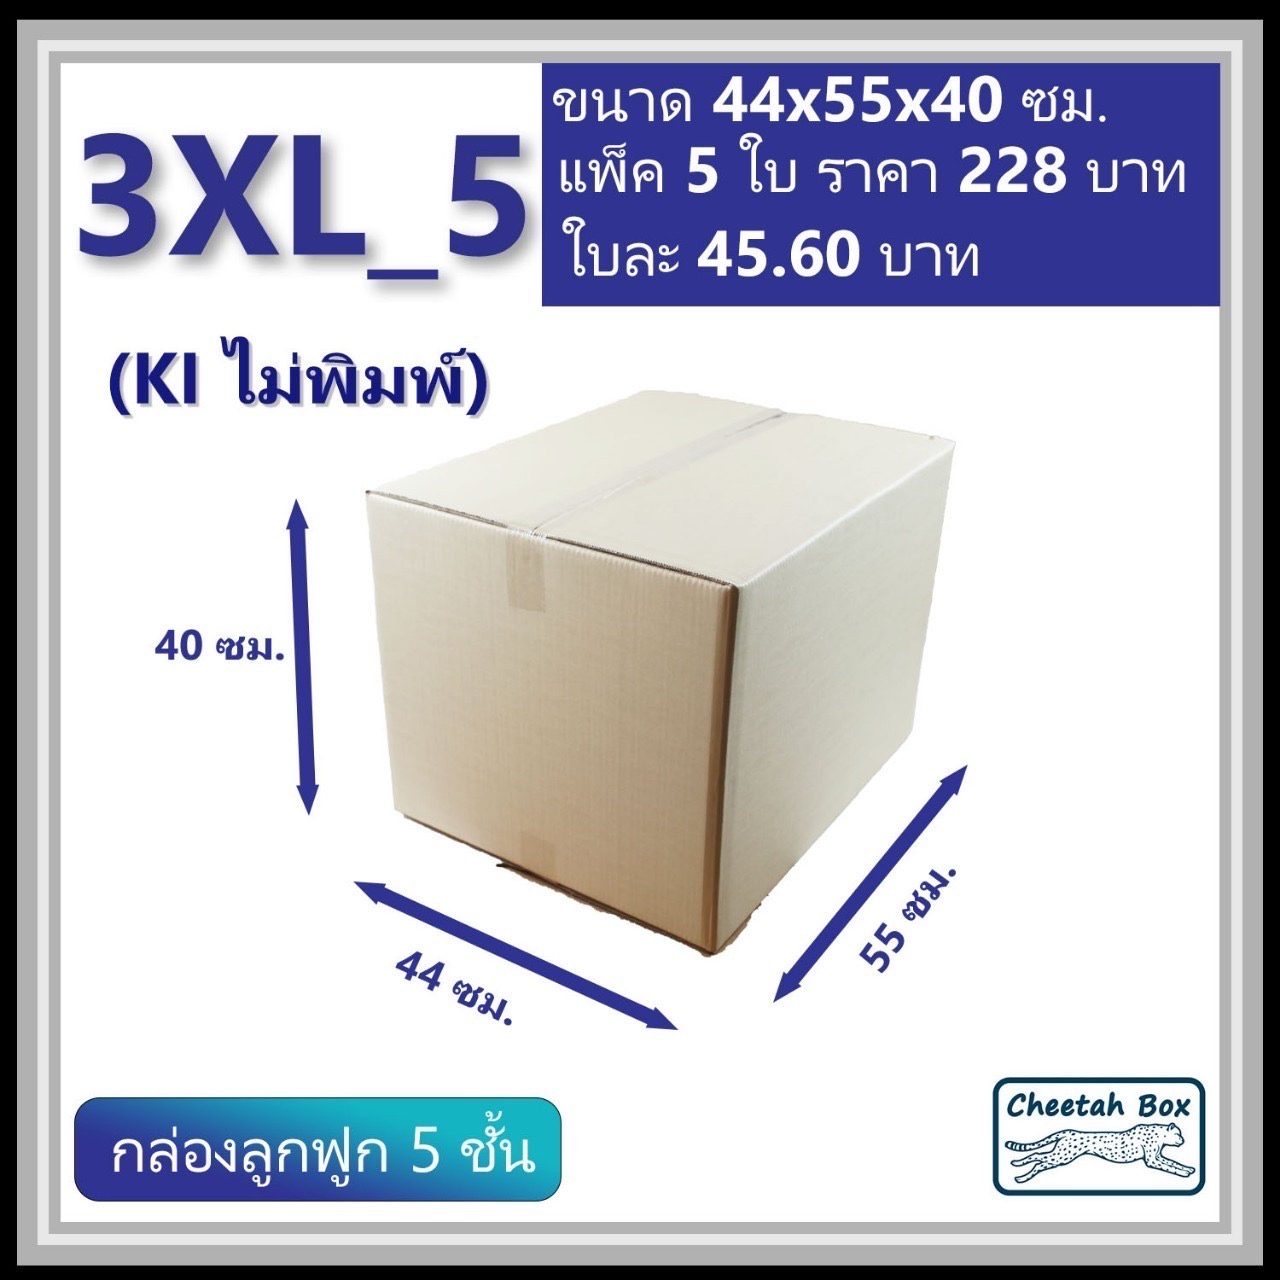 กล่องพัสดุ 3XL_5 (KI 5 ชั้น) ไม่พิมพ์ (Post Box) ลูกฟูก 5 ชั้น ขนาด 44W x 55L x 40H cm.